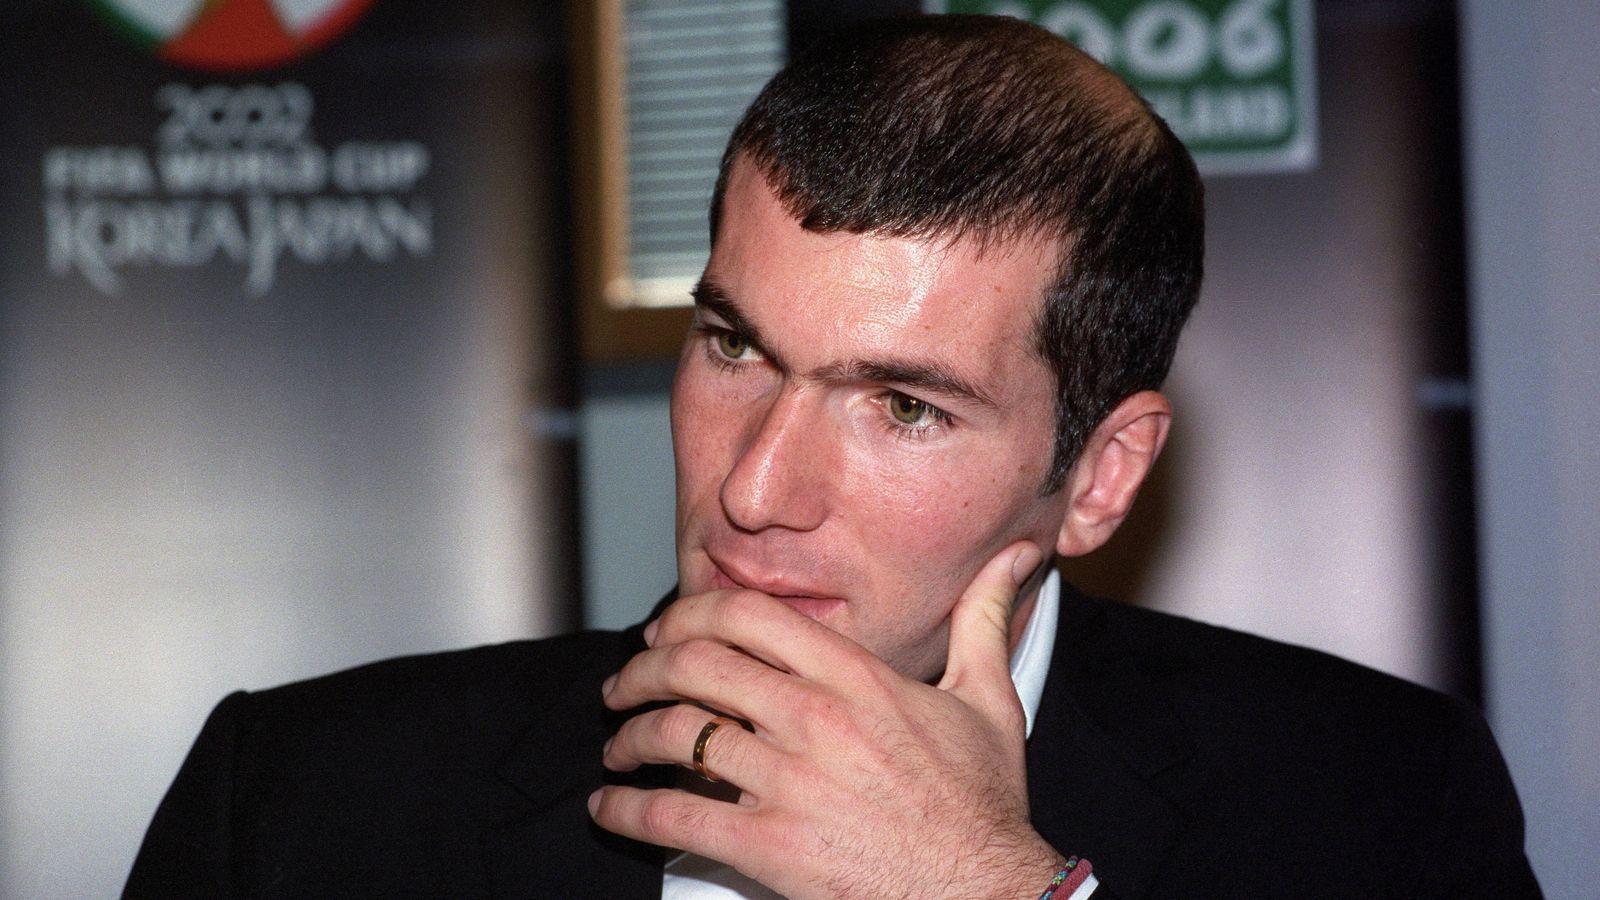 
                <strong>Zinedine Zidane (2000)</strong><br>
                Wie schon 1998, so führte Zinedine Zidane die französische Nationalmannschaft zwei Jahre später erneut zu einem großen Titel. Dem WM-Triumph von 1998 folgte der EM-Erfolg und so durfte "Zizou" am Jahresende dann auch noch als persönliches Highlight den Ballon d'Or entgegennnehmen. Der damalige Juve-Star gewann vor seinem späteren Real-Teamkollegen Luis Figo und Rivaldo. 
              